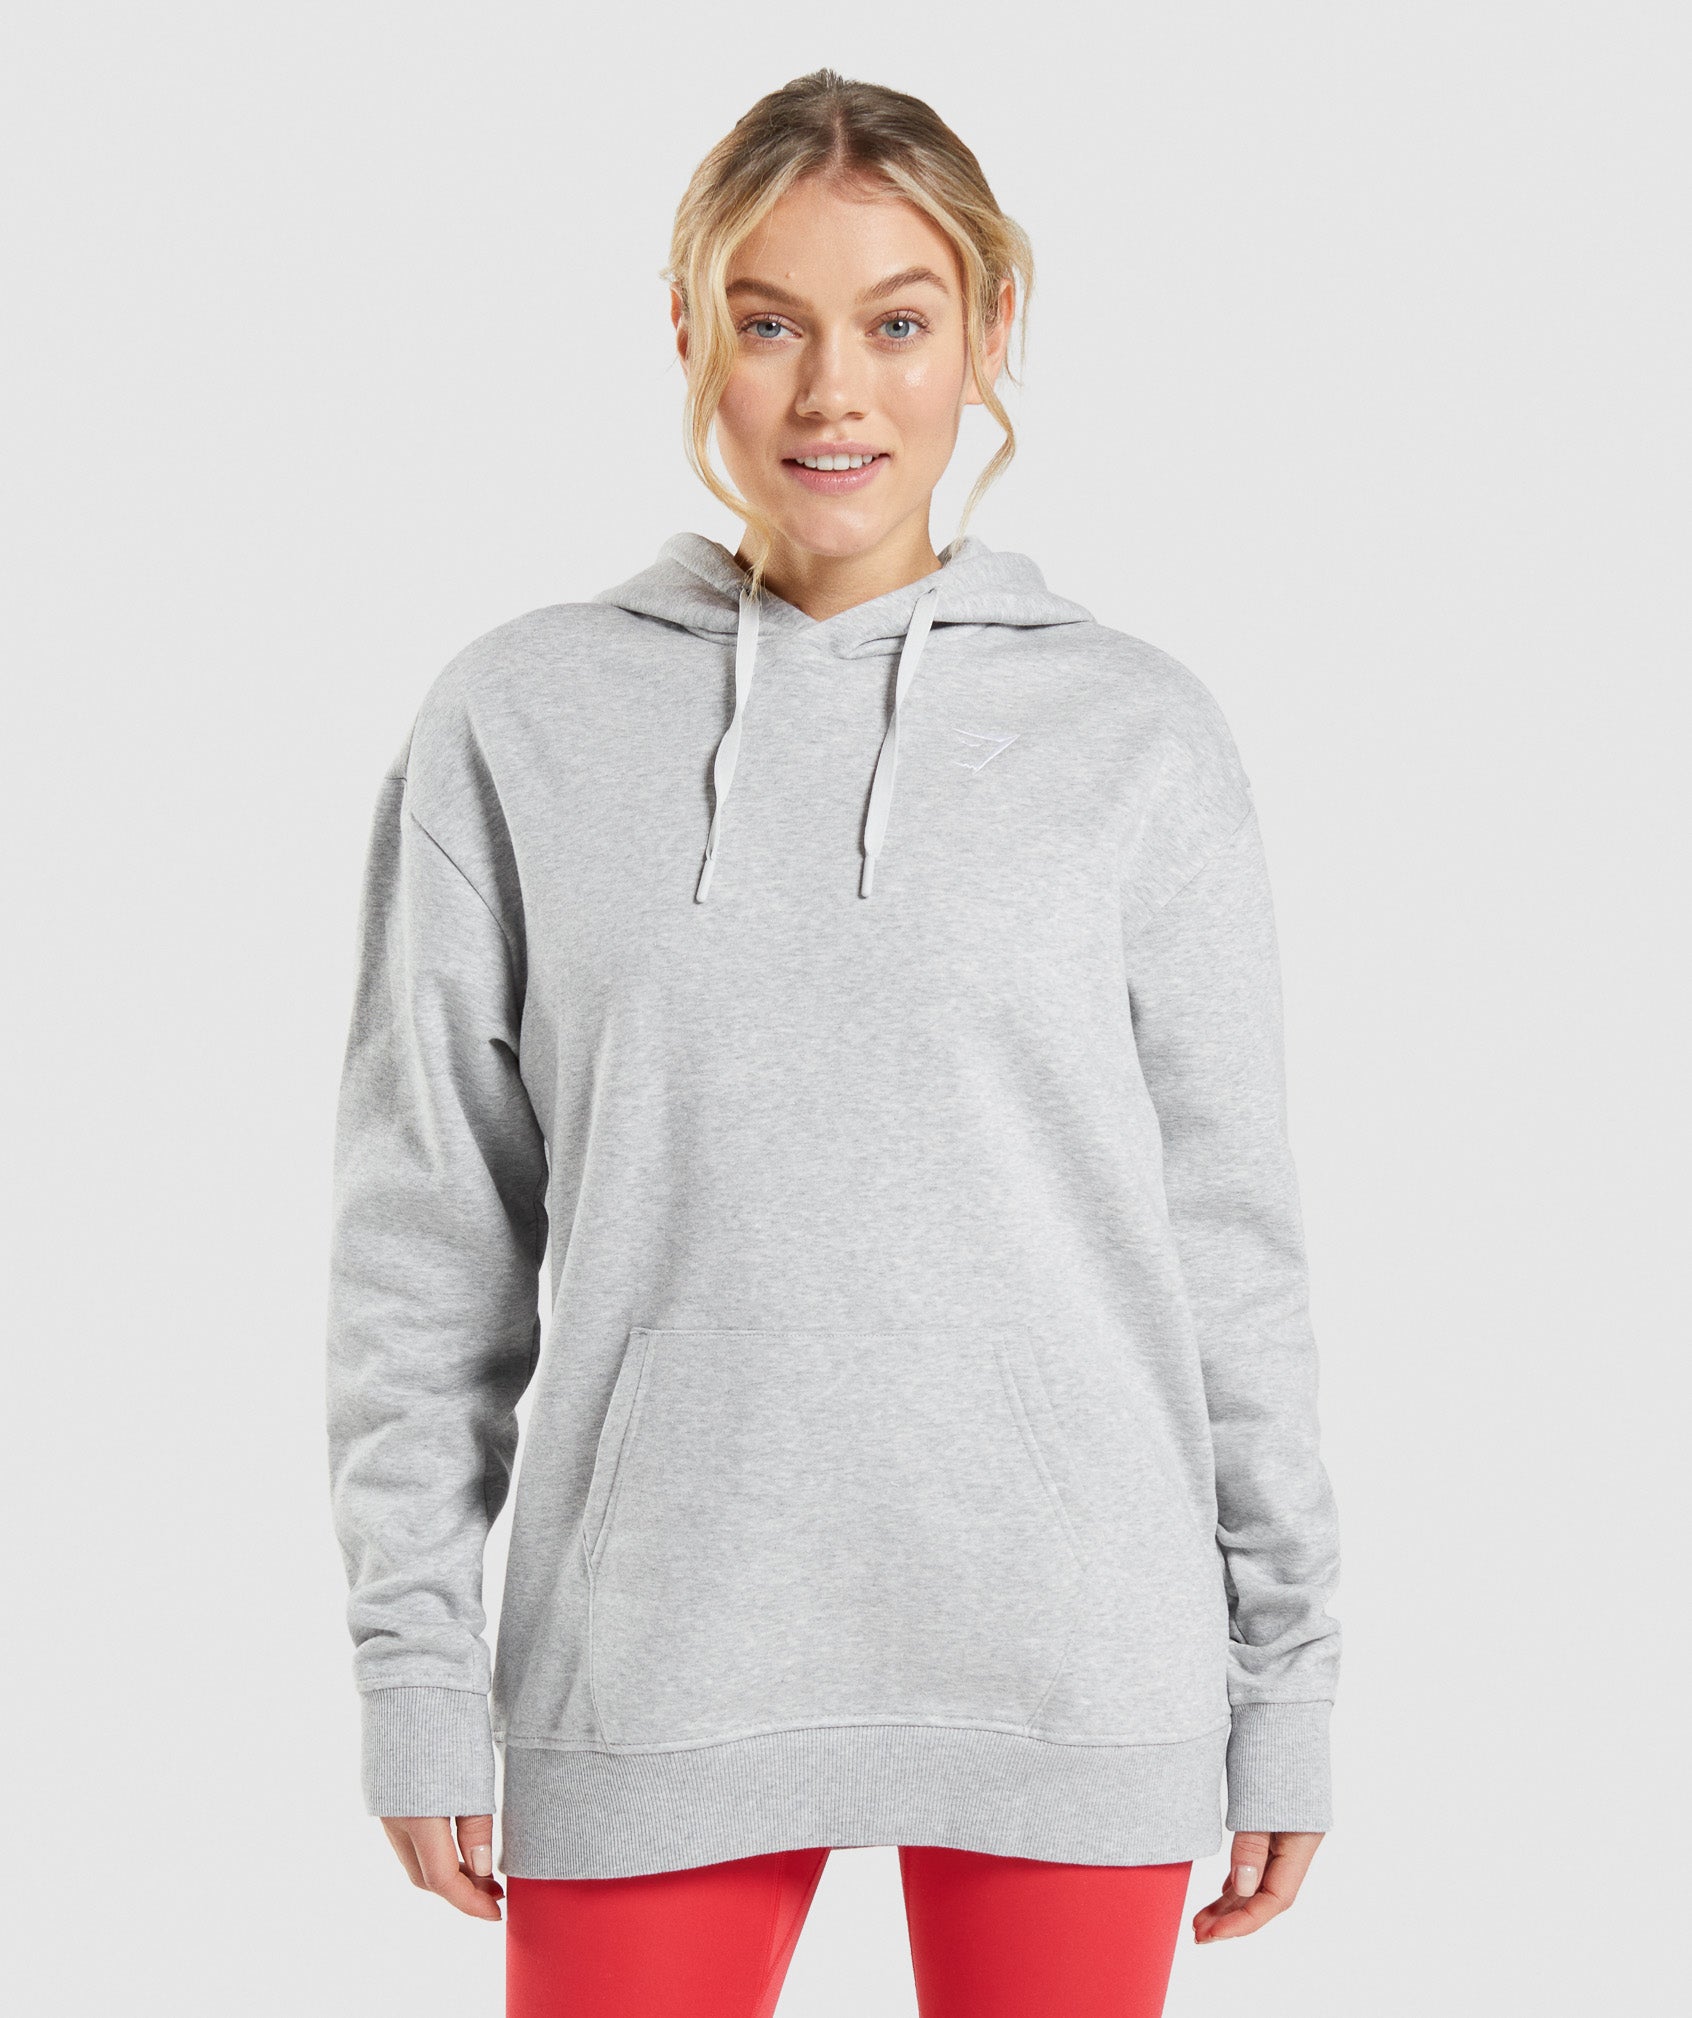 Gymshark Hoodie Sweatshirt Womens XS Oversized Gray Sleeve Chest